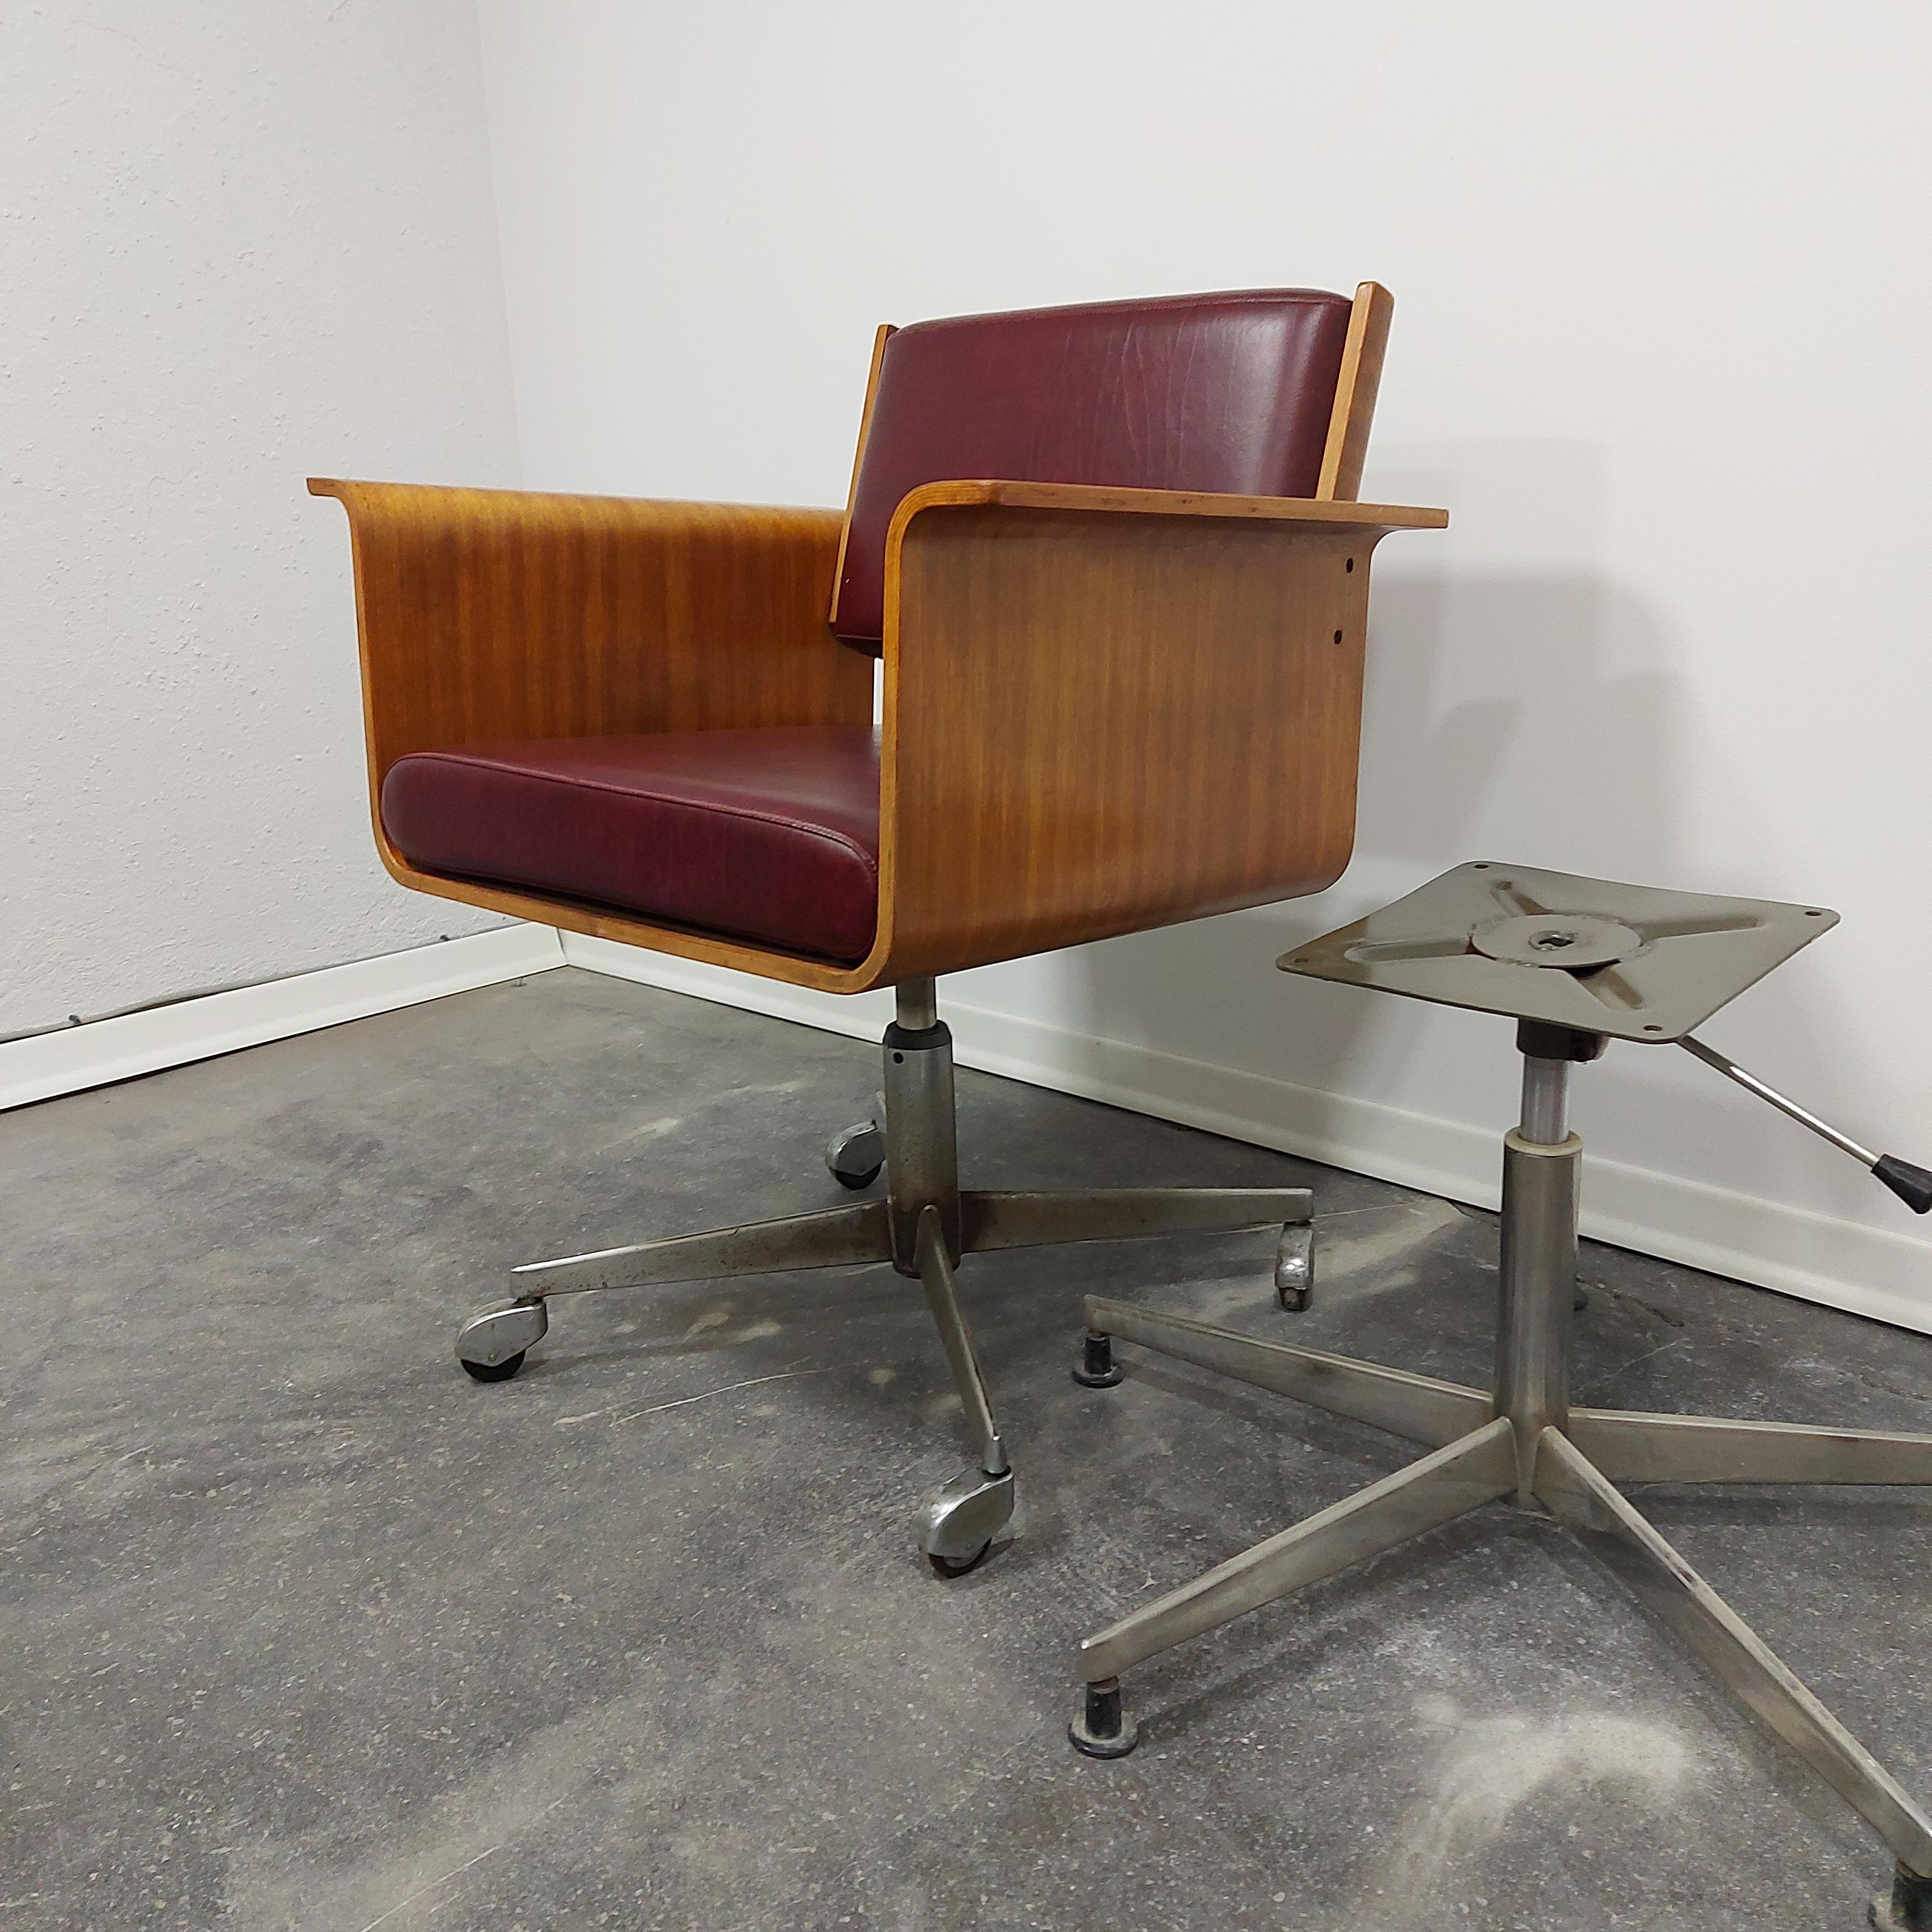 Vintage Sessel mit Armlehne, hergestellt von STOL Kamnik (seltener Stuhl).

Zeitraum: 1970s 

MATERIAL: Sperrholz, verchromtes Metallgestell, Leder.

Zustand: sehr guter Vintage-Zustand, einige Gebrauchsspuren.

Die Höhe kann verstellt werden, aber